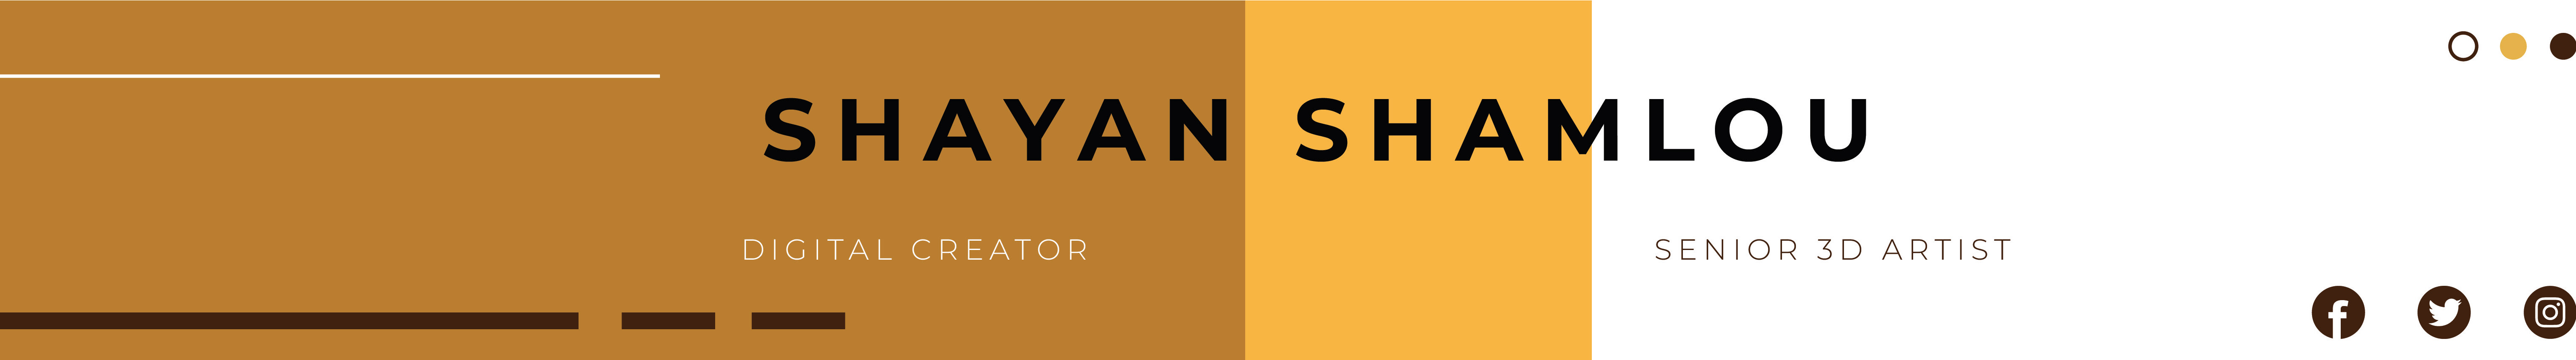 Shayan Shamlou's profile banner